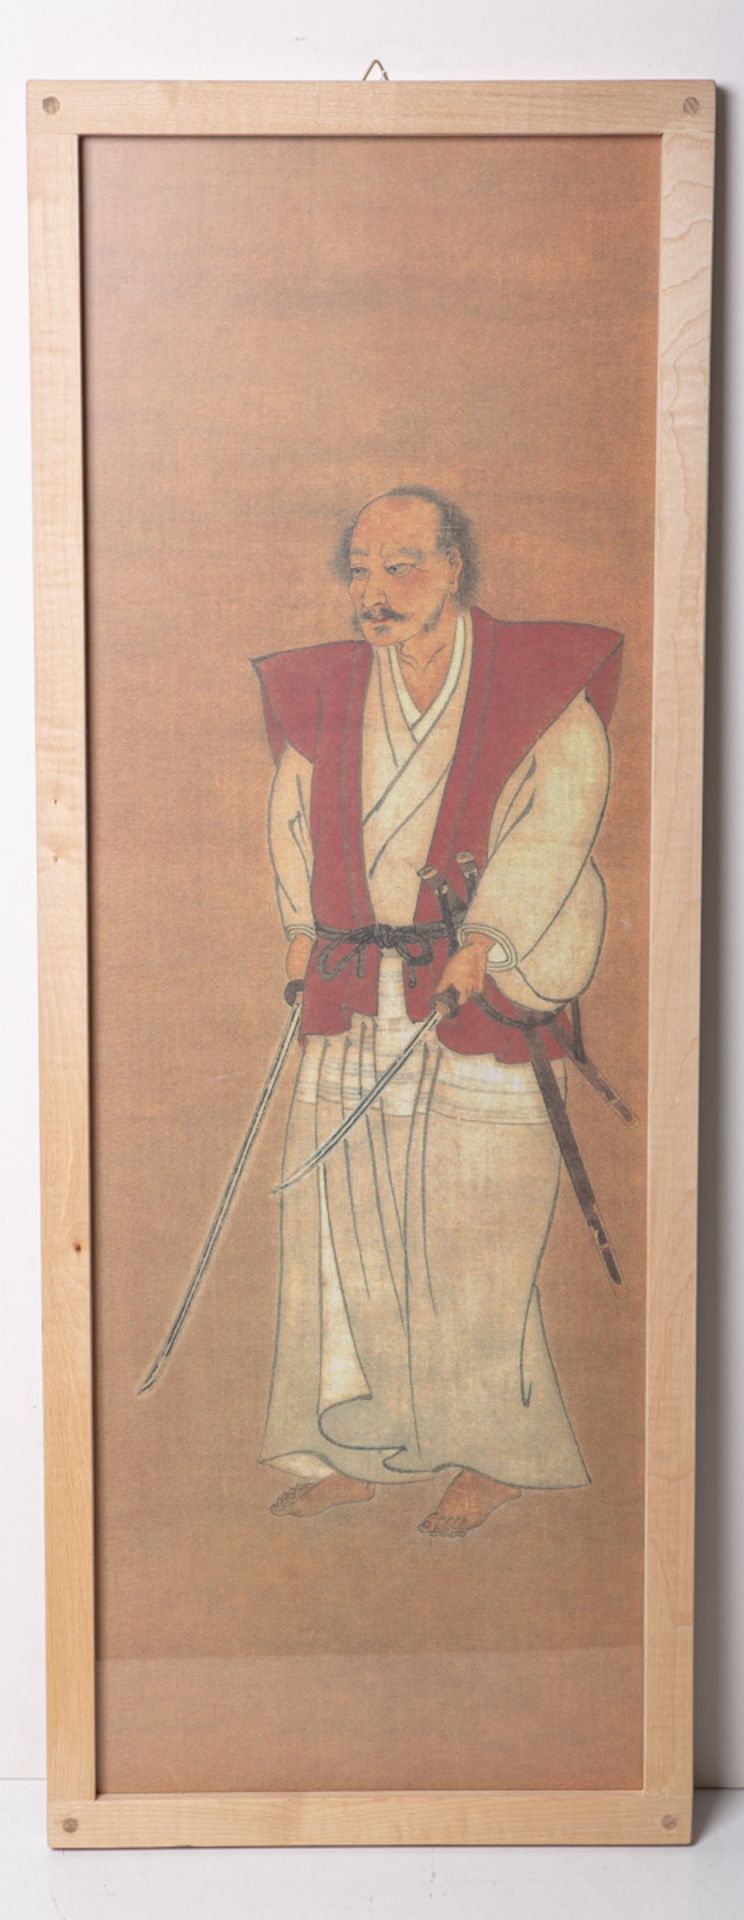 KünstlerIn unbekannt (wohl Japan, wohl 20./21. Jh.), Samurai